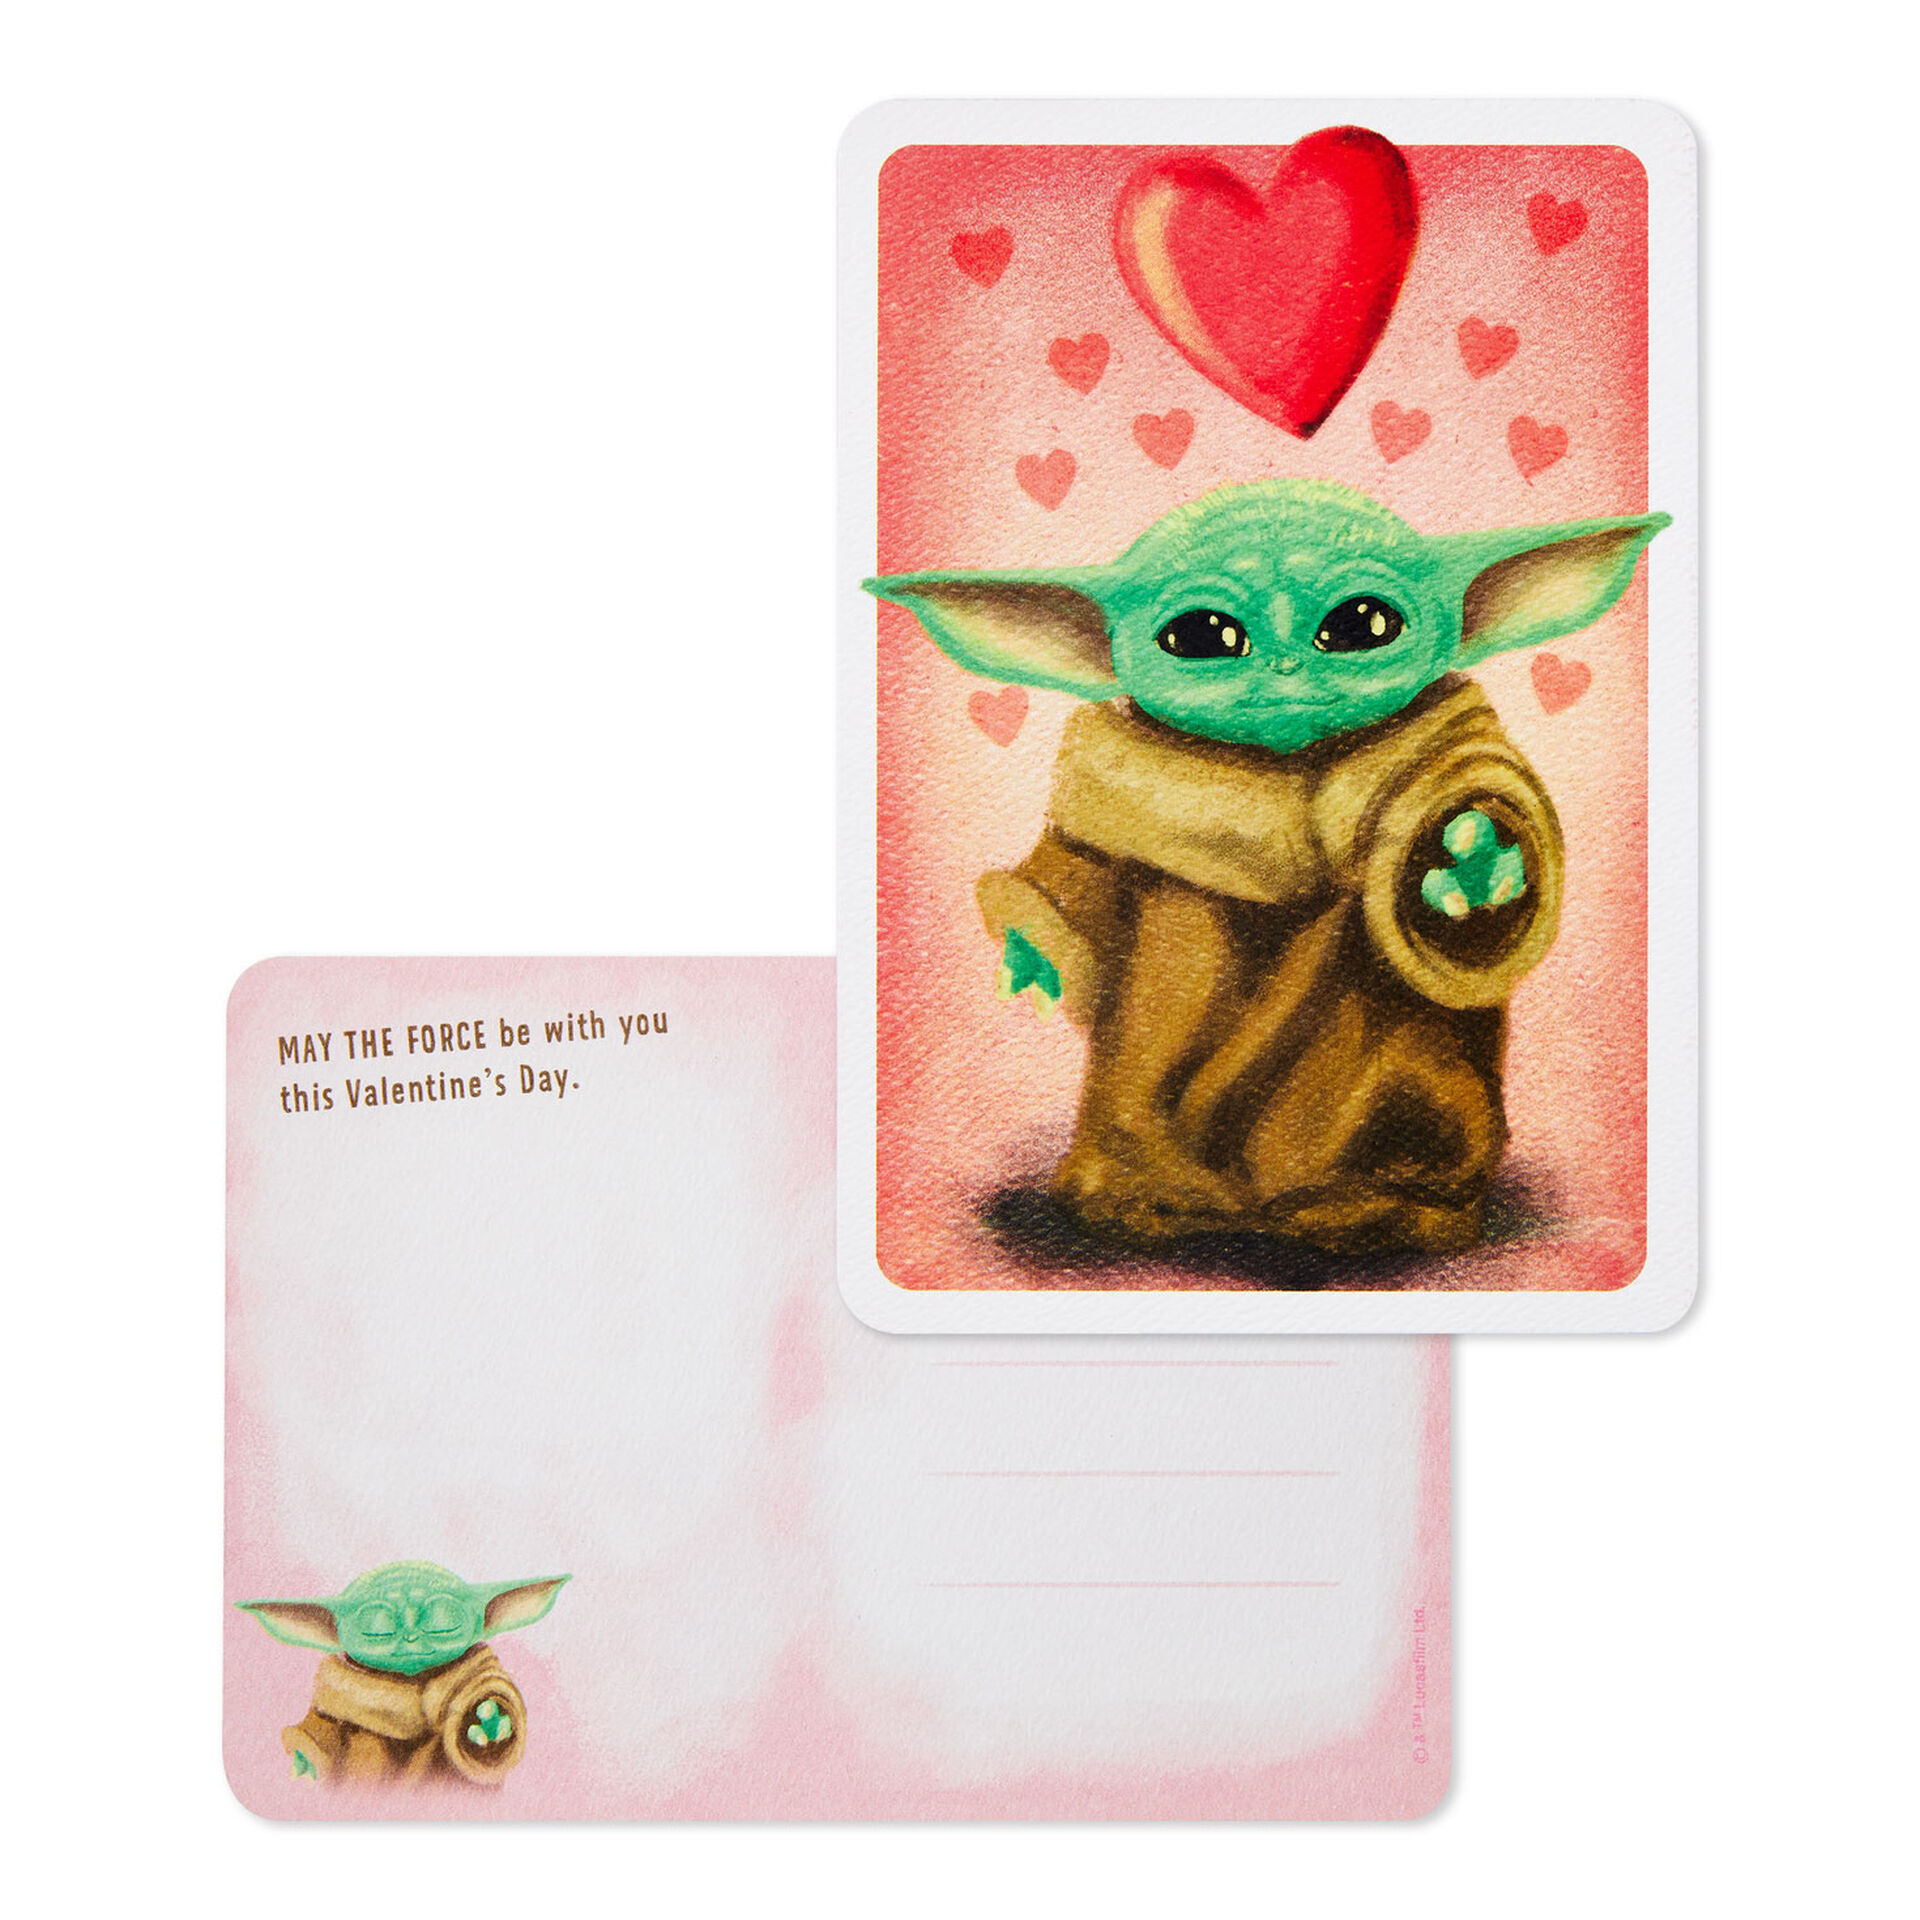 Star-Wars-Mandalorian-Baby-Yoda-Valentines-Day-Postcard_199V1272_02